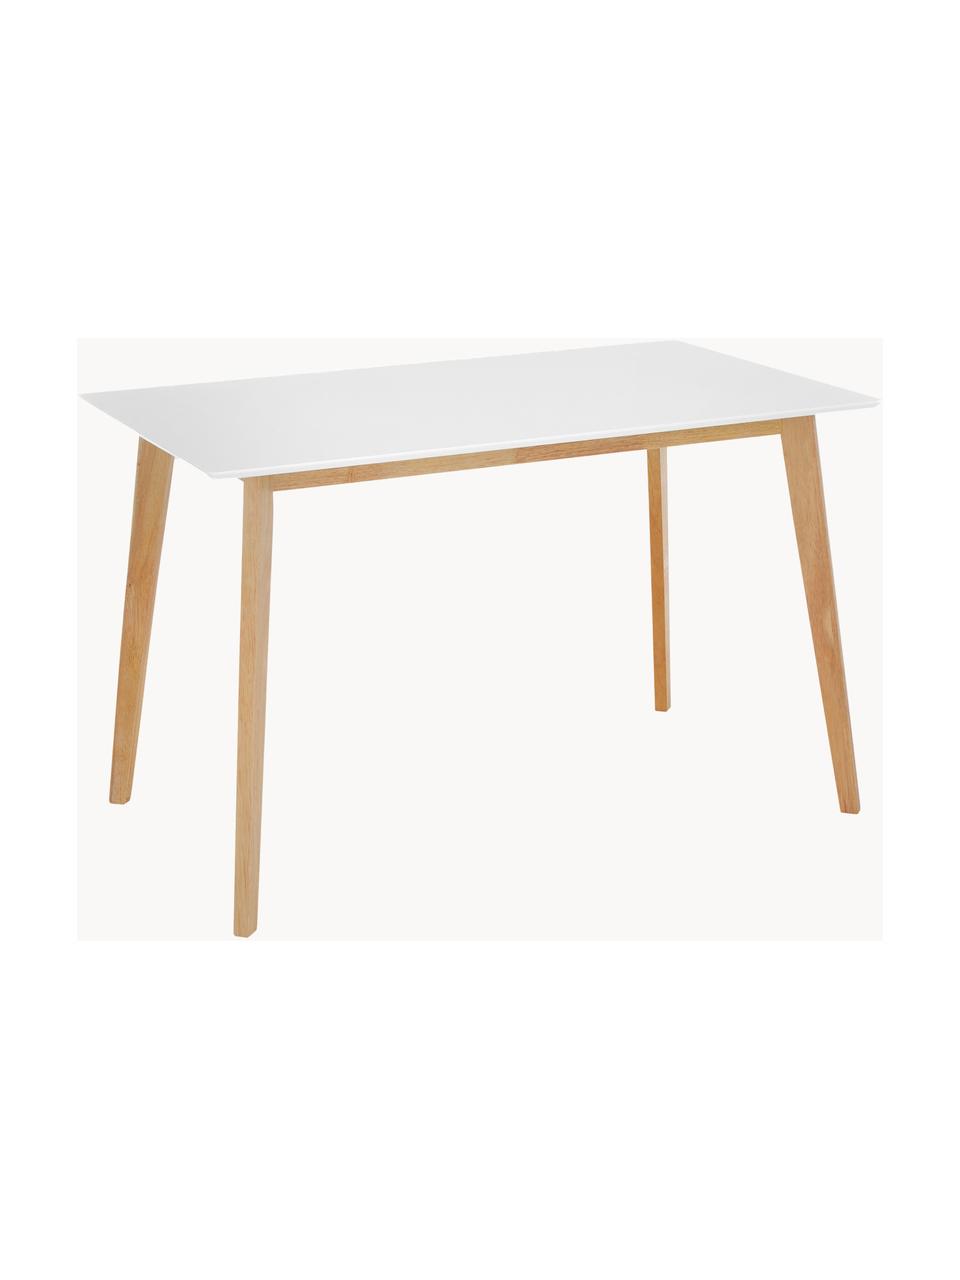 Schreibtisch Vojens, Tischplatte: Mitteldichte Holzfaserpla, Beine: Gummibaumholz, Holz, Weiß, B 120 x T 70 cm